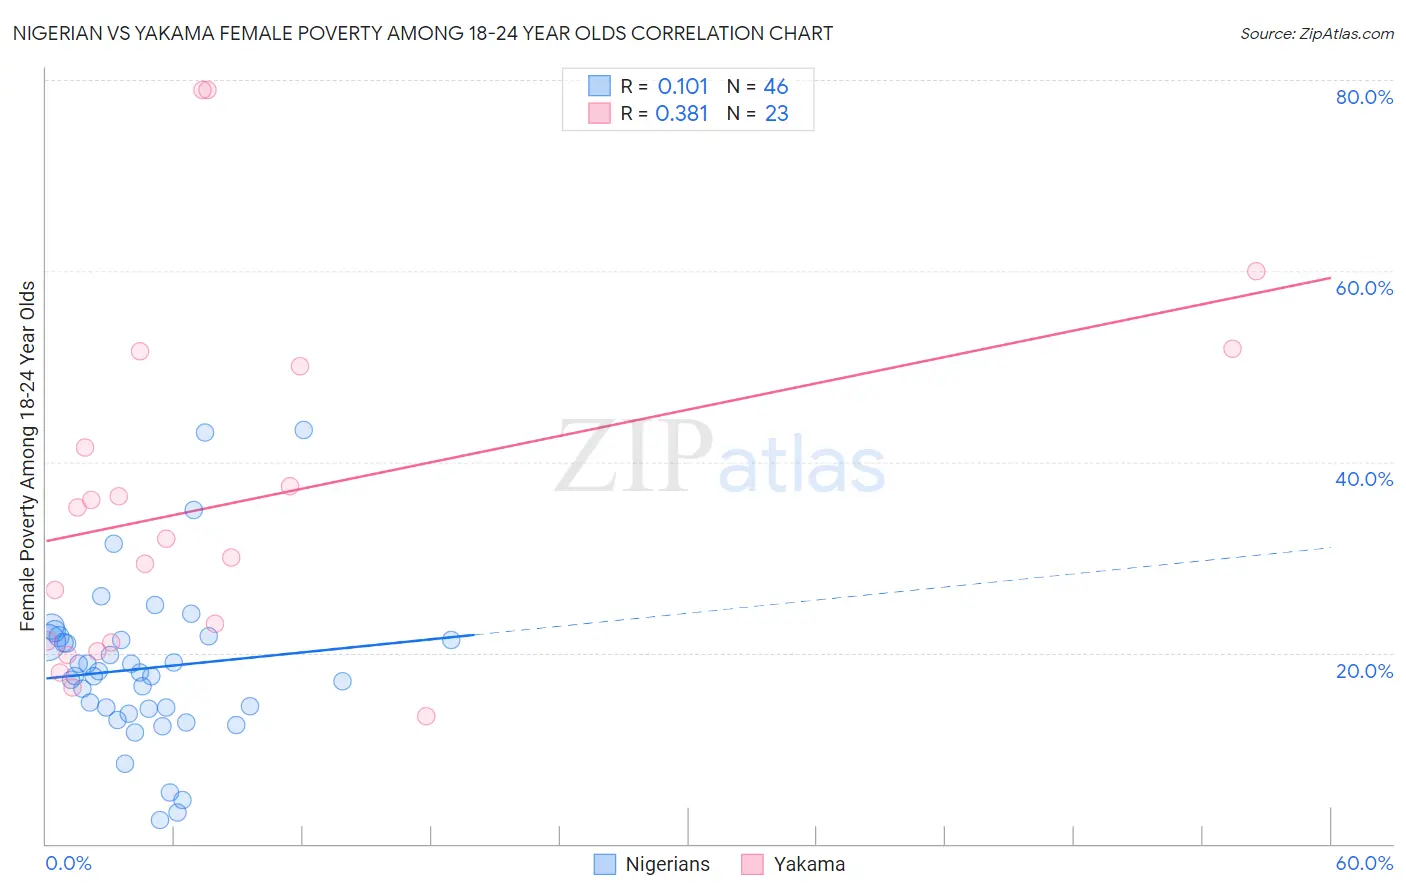 Nigerian vs Yakama Female Poverty Among 18-24 Year Olds